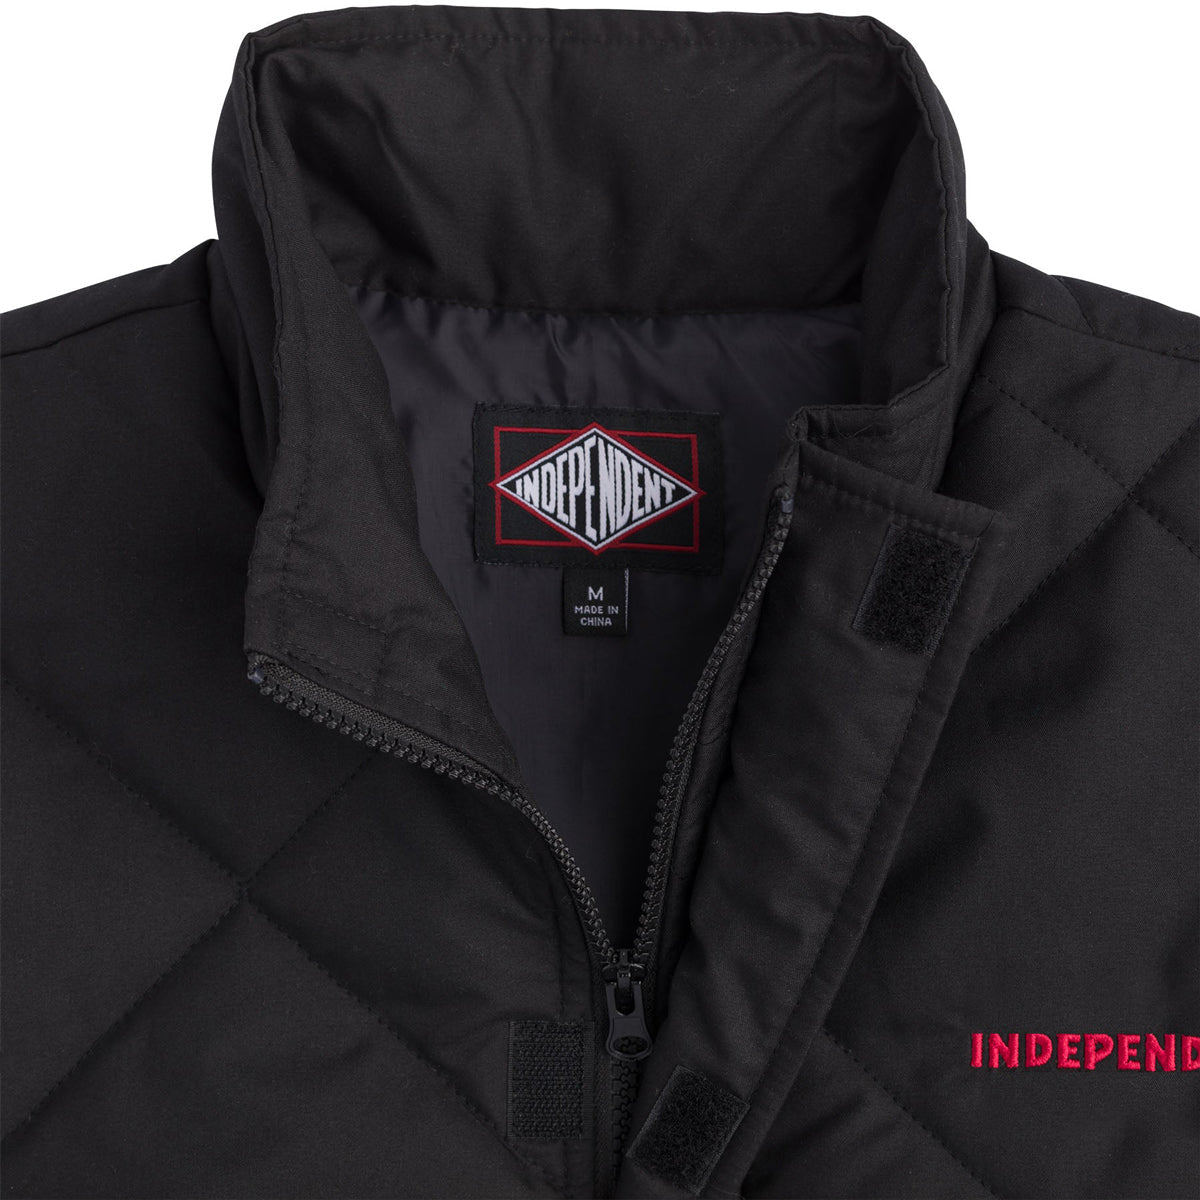 Independent Holloway Puffer Vest Jacket - Black image 3